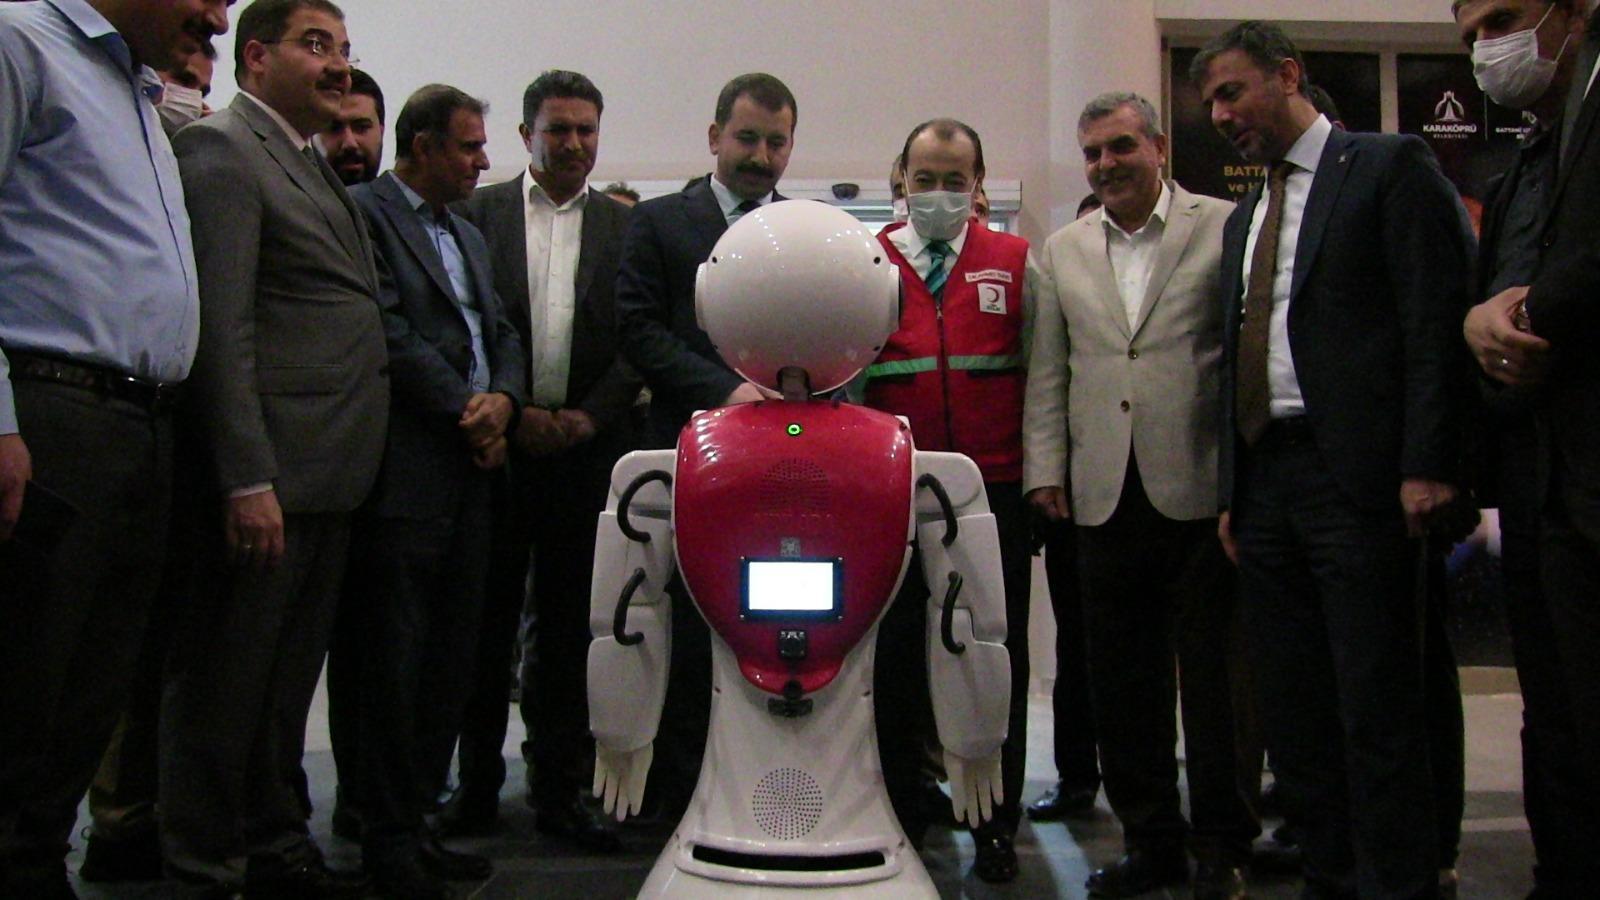 Havacılık ve Bilim Merkezinde bulunan Ada robot, protokol karşısında oynadı